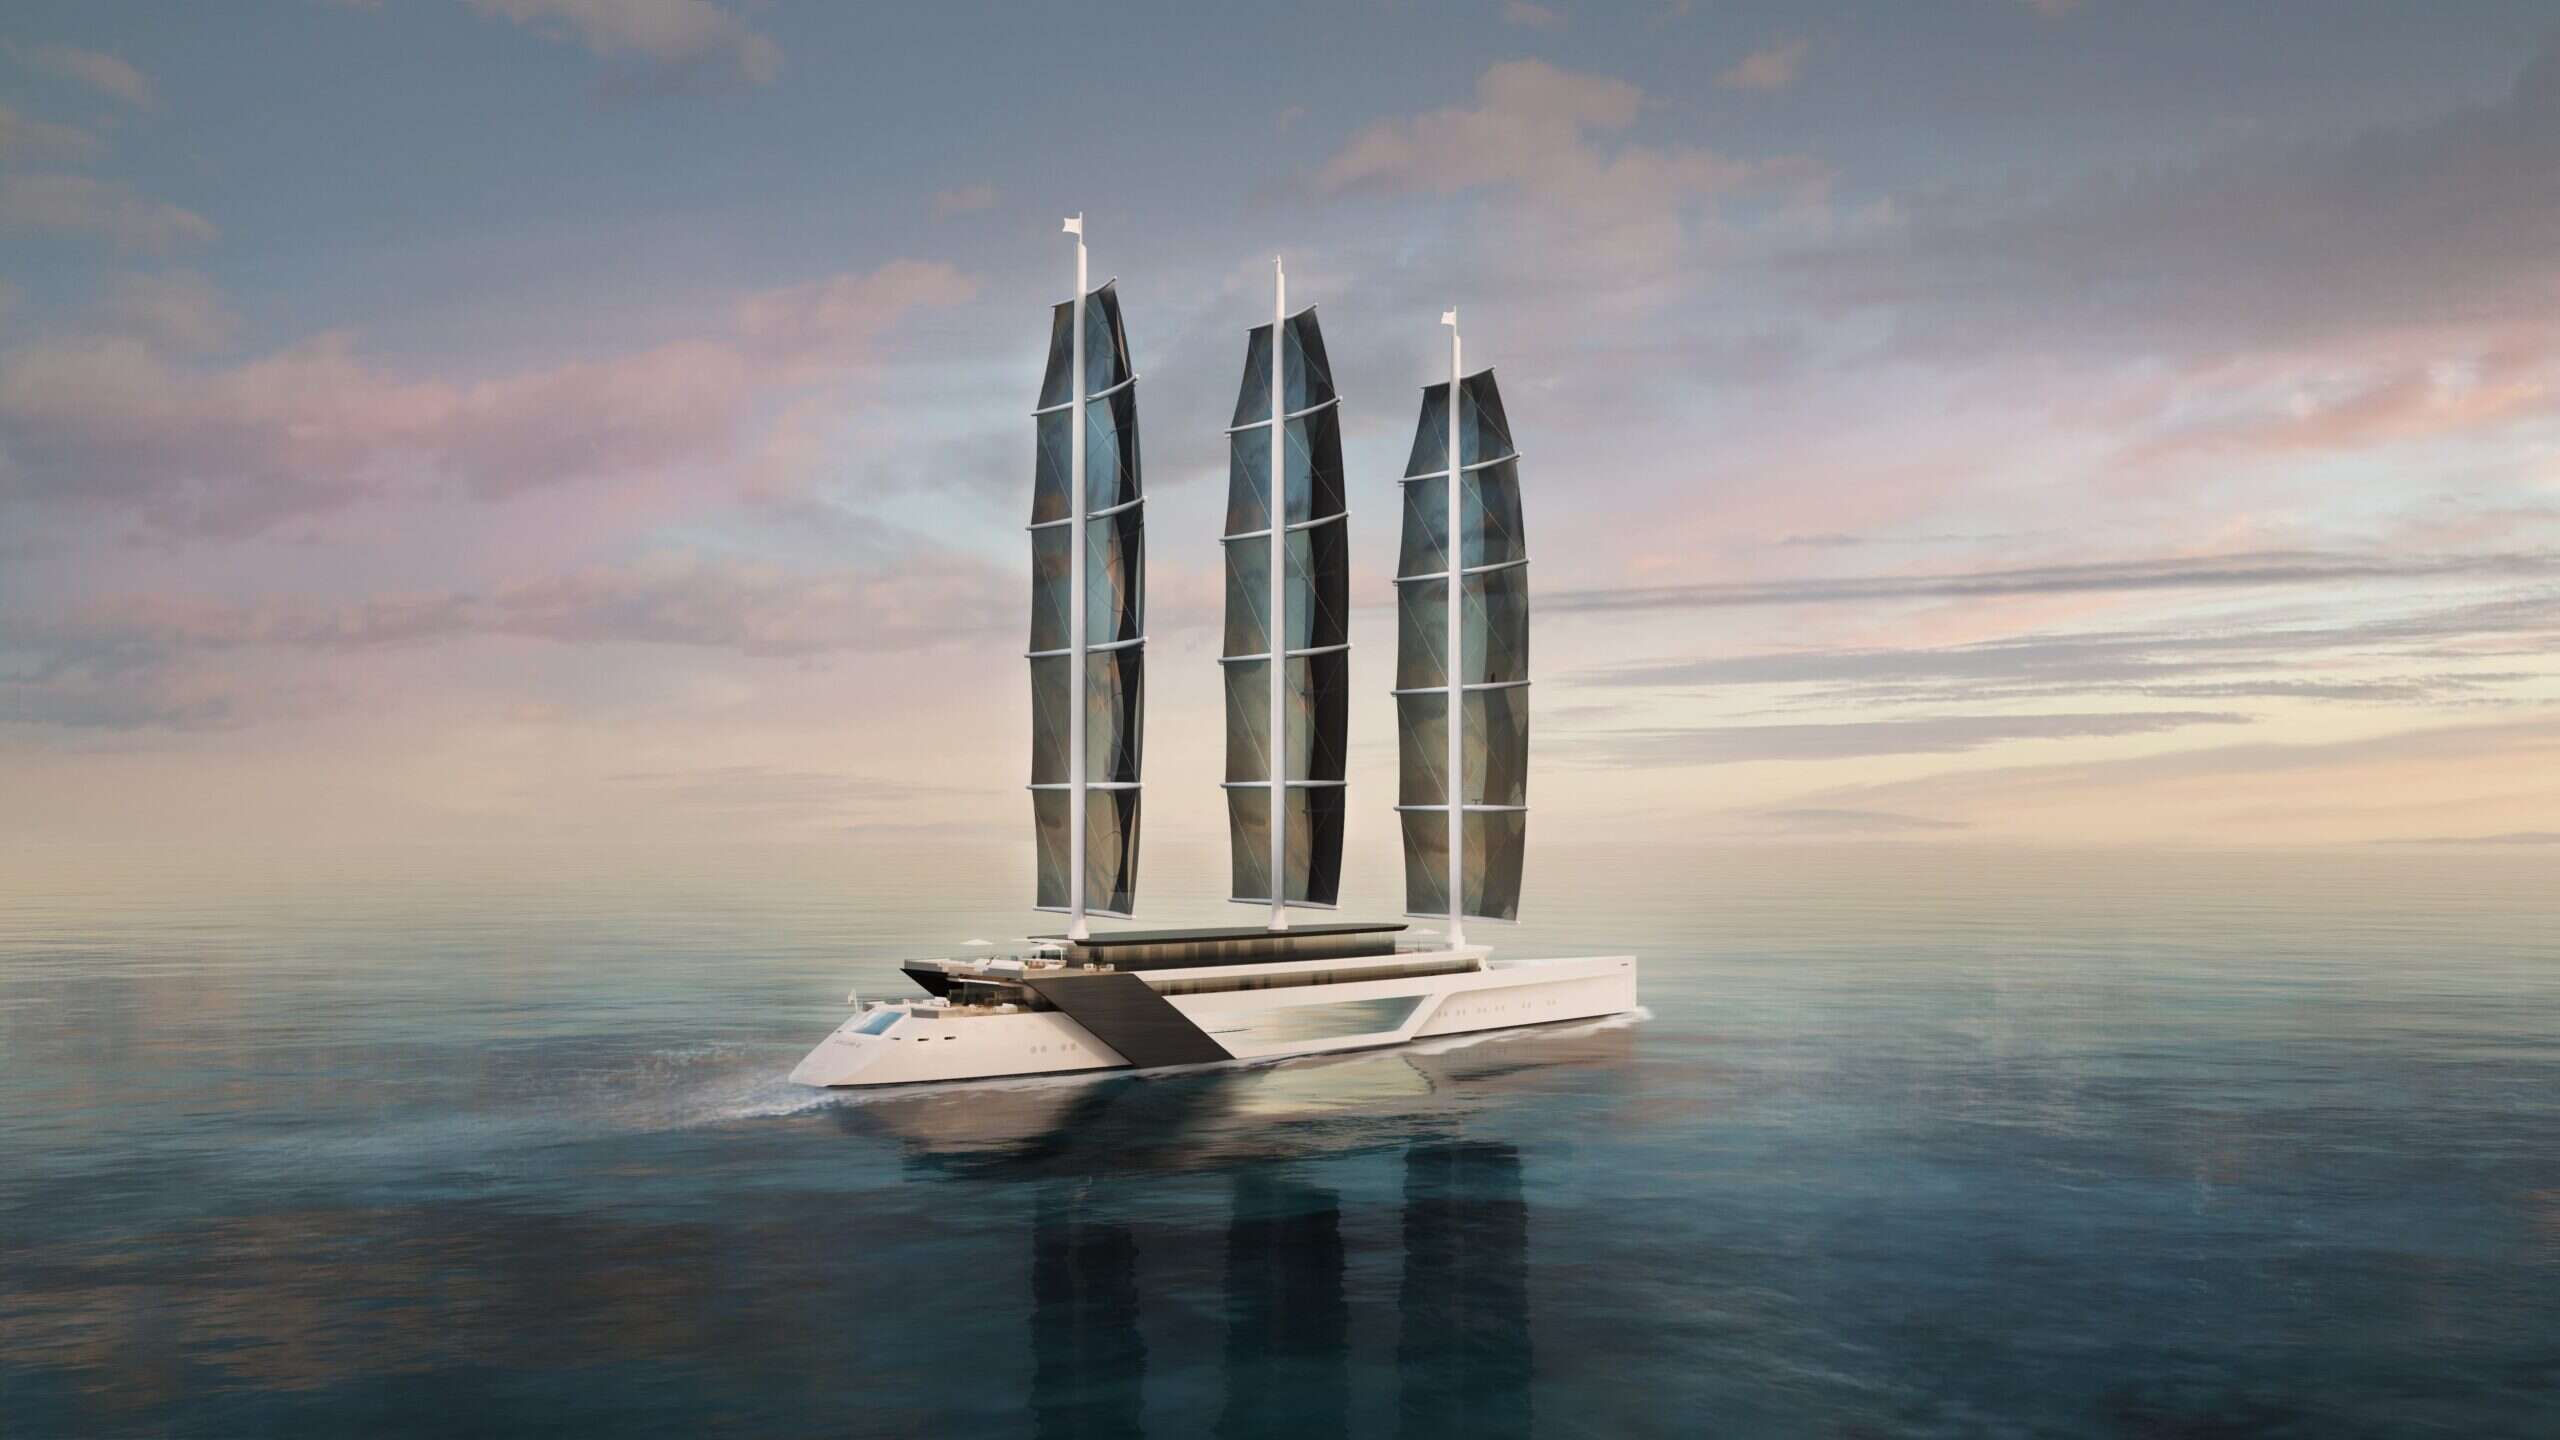 aegir 2.0 yacht concept on ocean